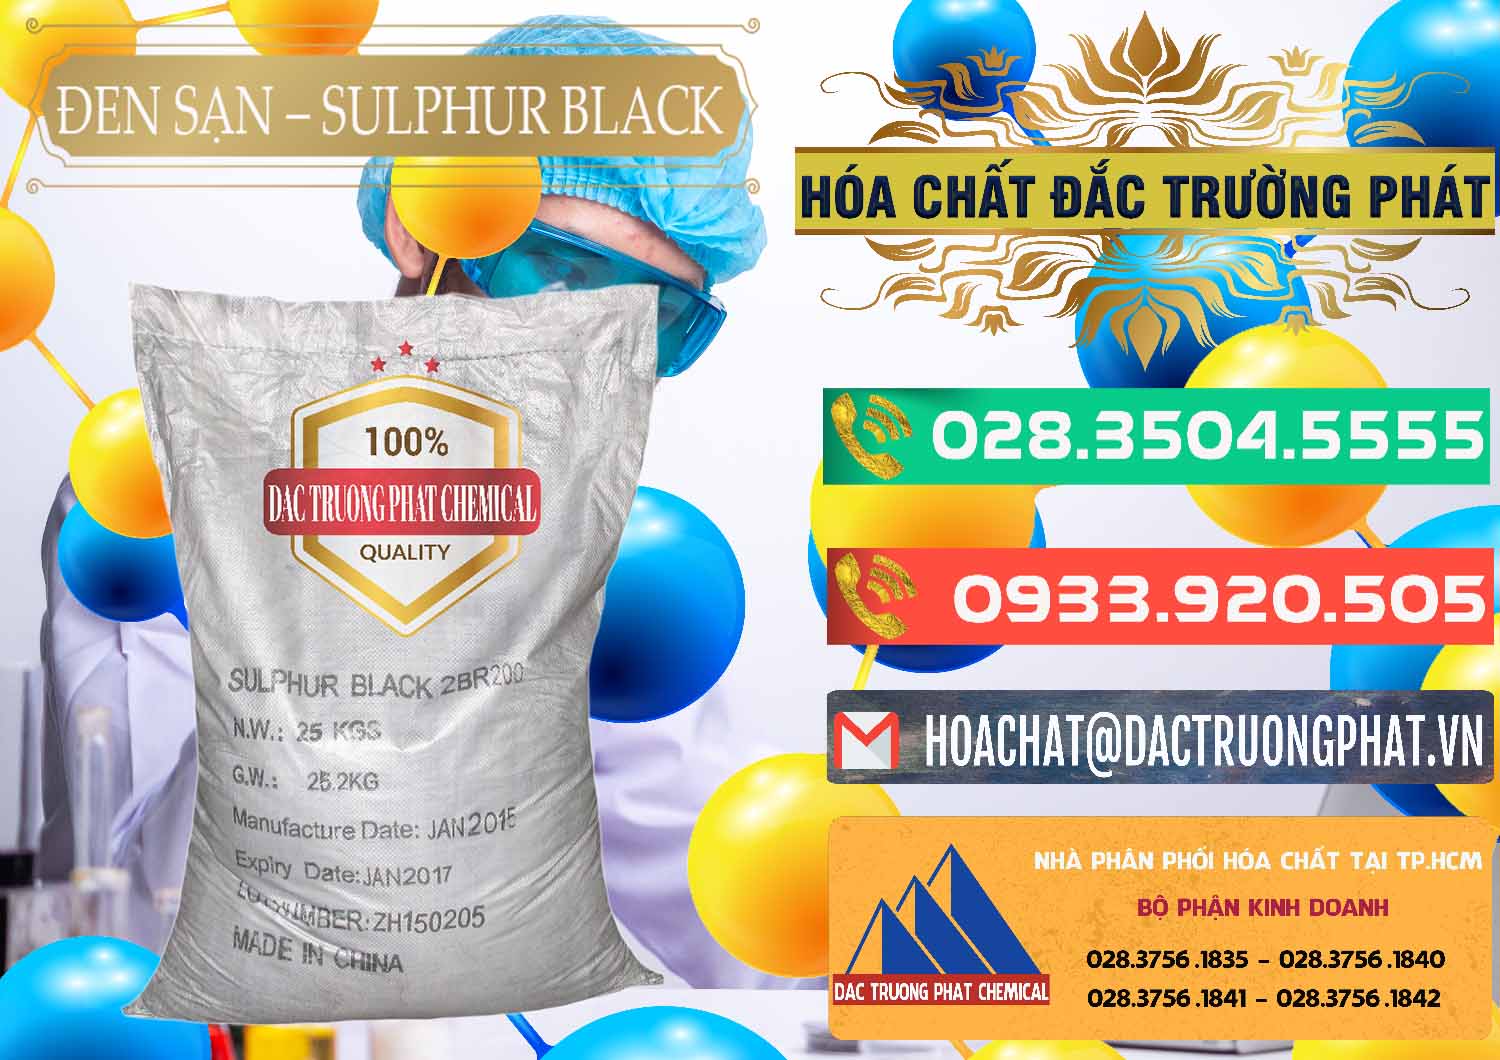 Công ty chuyên kinh doanh & bán Đen Sạn – Sulphur Black Trung Quốc China - 0062 - Chuyên cung cấp ( nhập khẩu ) hóa chất tại TP.HCM - congtyhoachat.com.vn